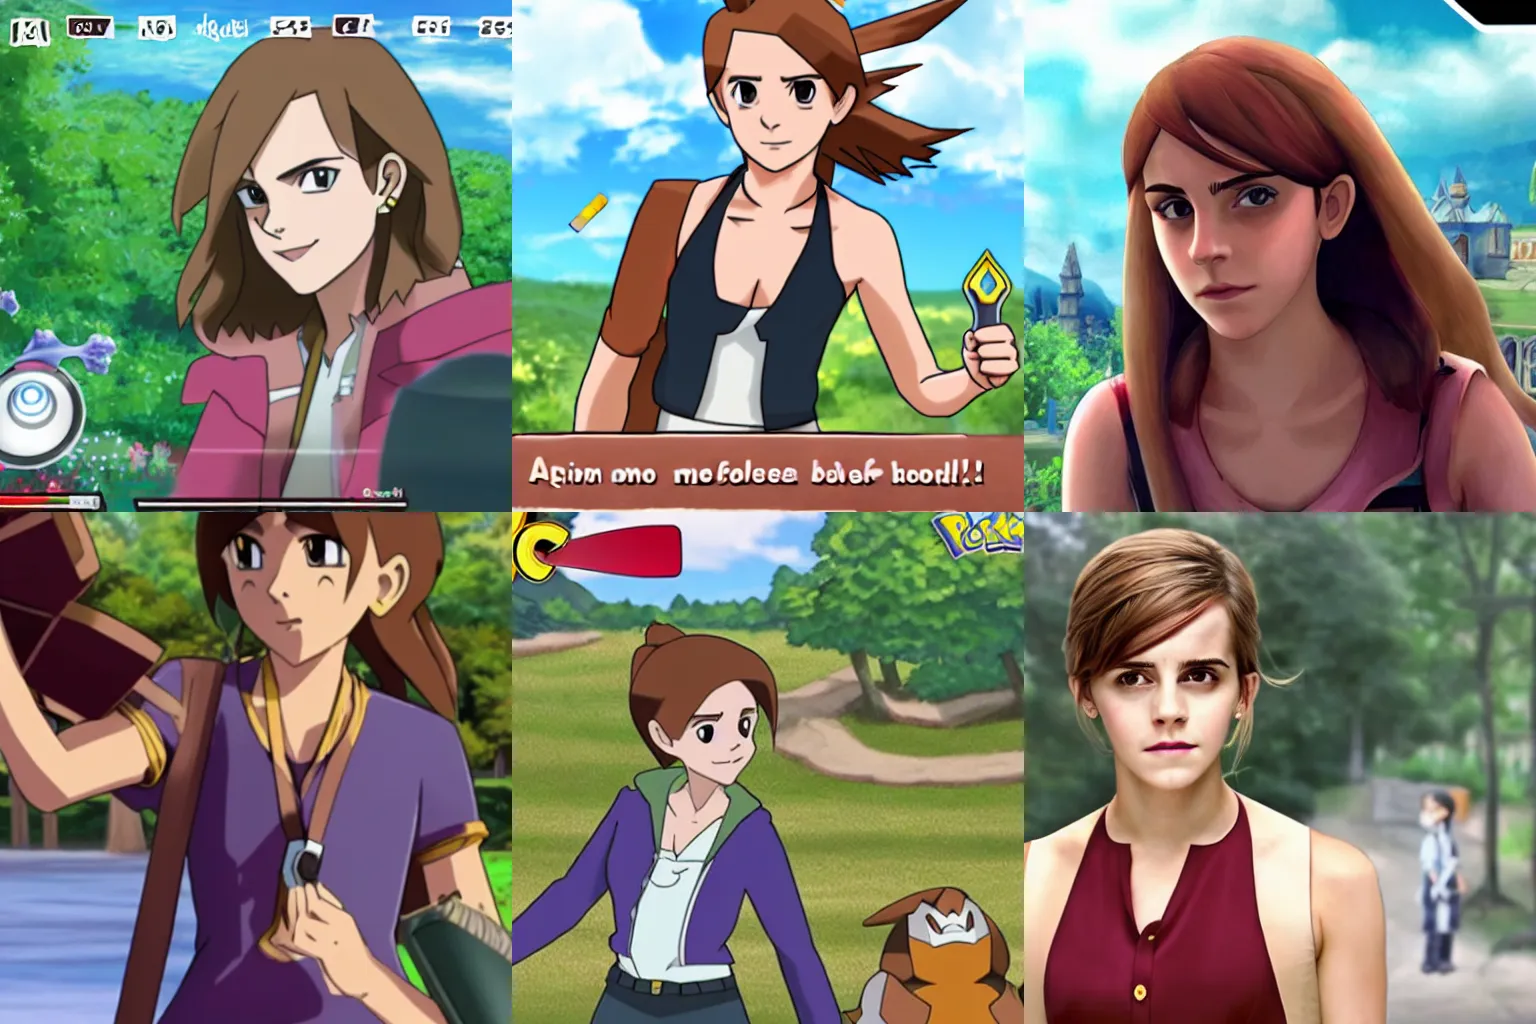 Prompt: Screenshot of Emma Watson in Pokemon